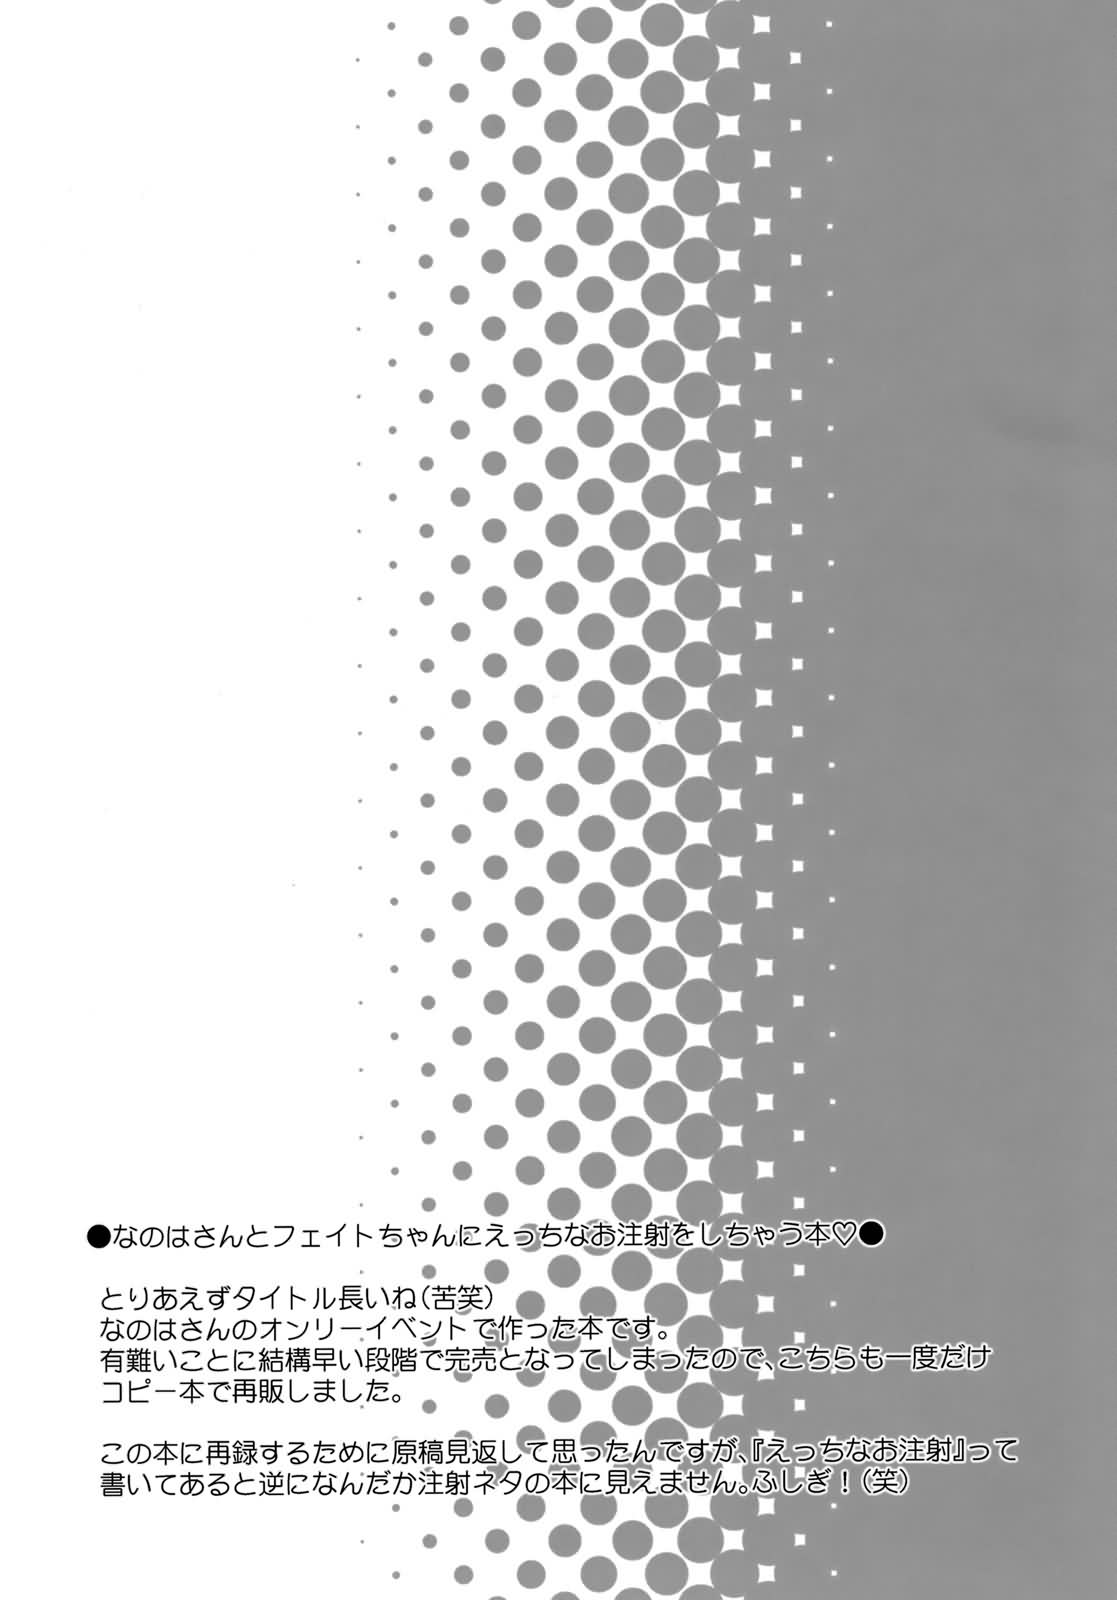 [Kurage Kenkyuusho] Drug and Drop (ENG) =Wrathkal+Zorbius= page 20 full